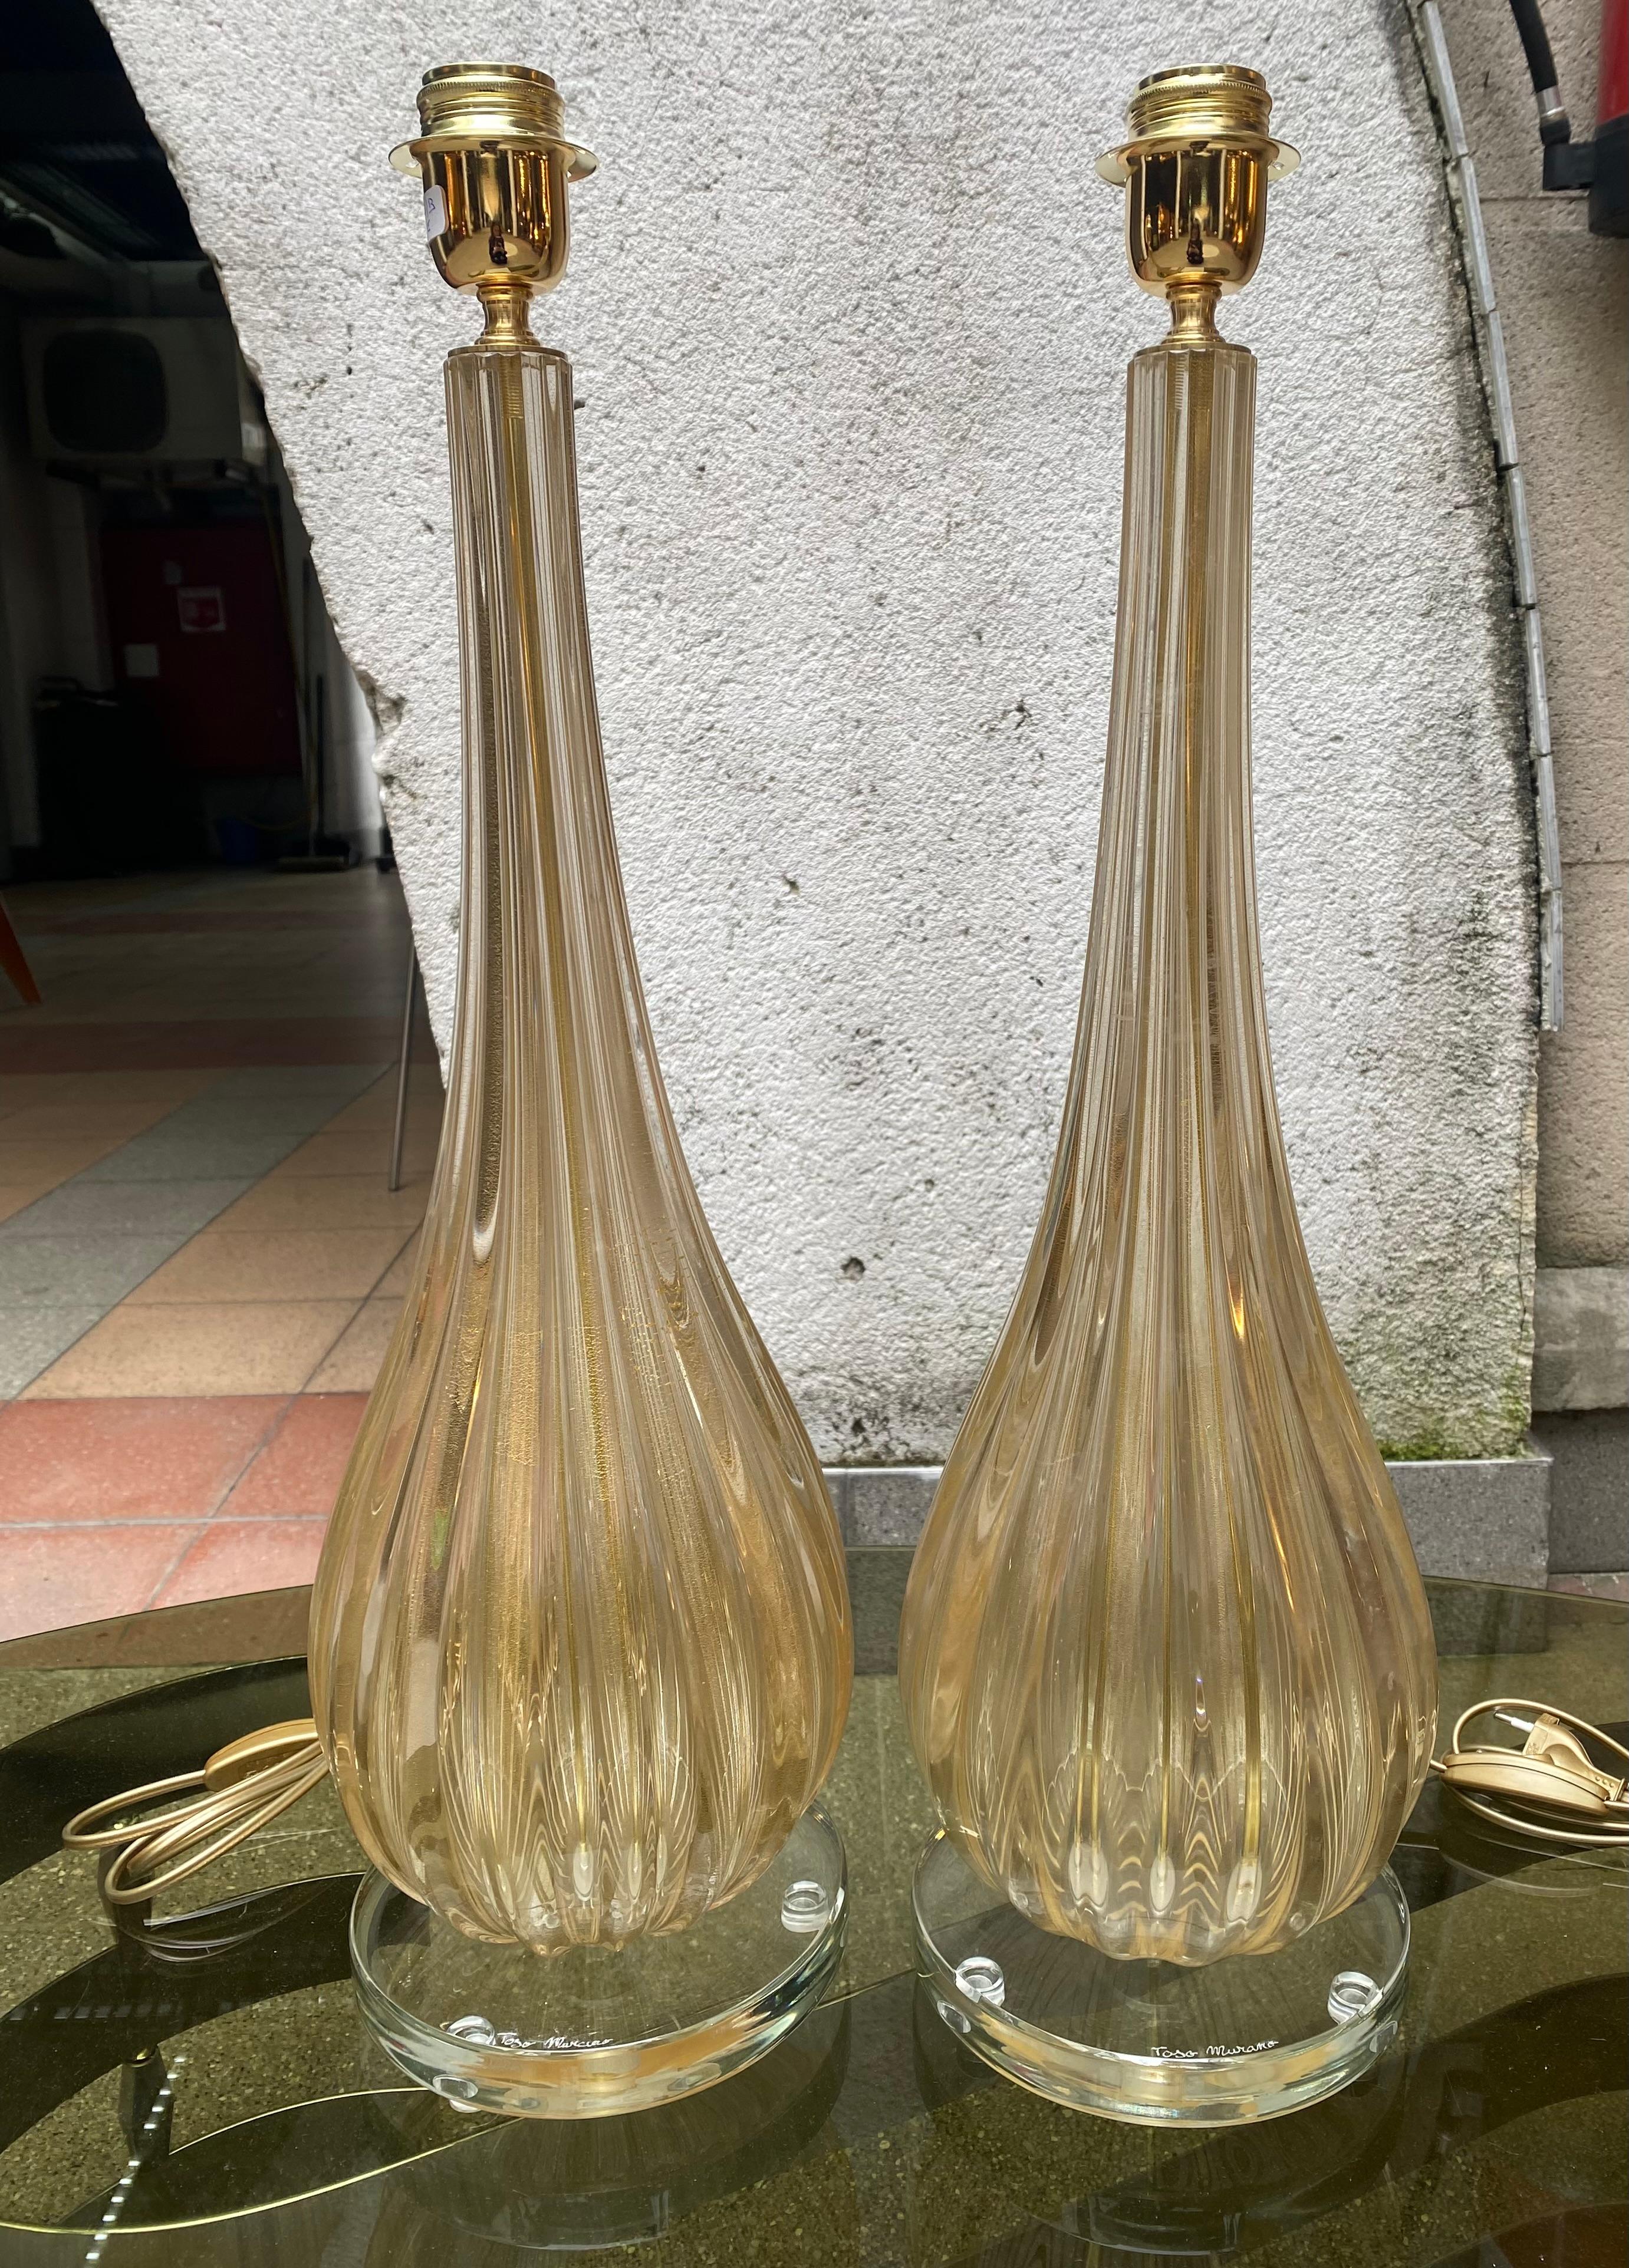 Paar Toso-Murano-Lampen
Muranoglas 
Gold 
Abmessungen : h62xl20cm
ref : c/1942/2/B
Preis : 3200€ für das Paar
